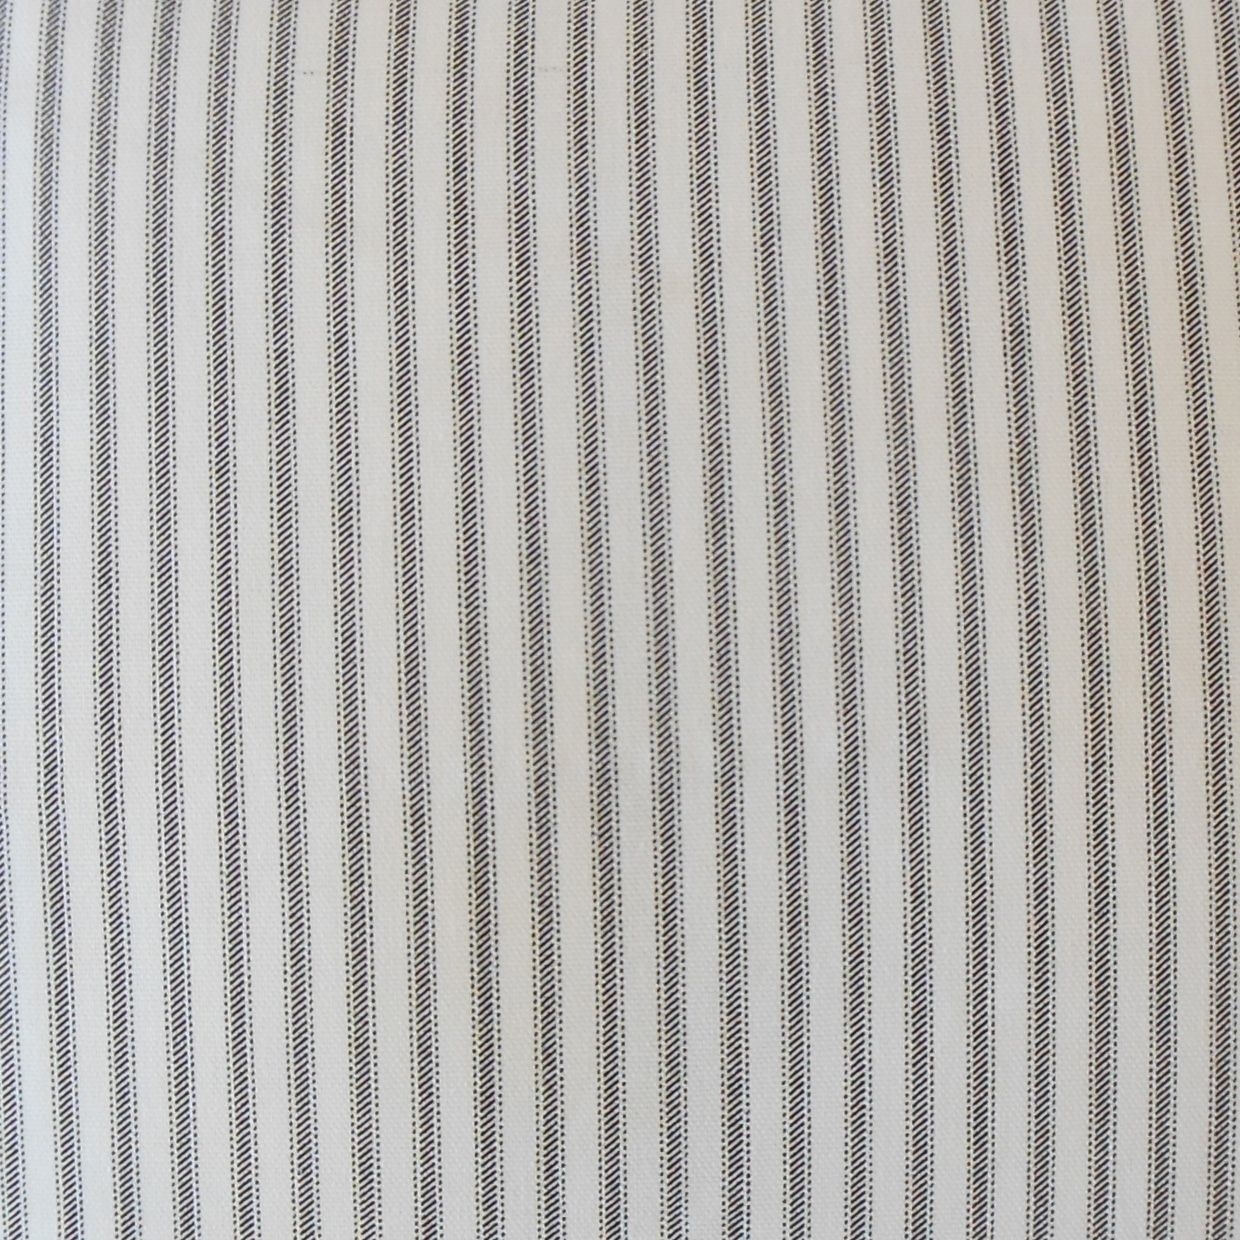 Ticking Stripe Pillow, Black, 18" x 18" - Image 1